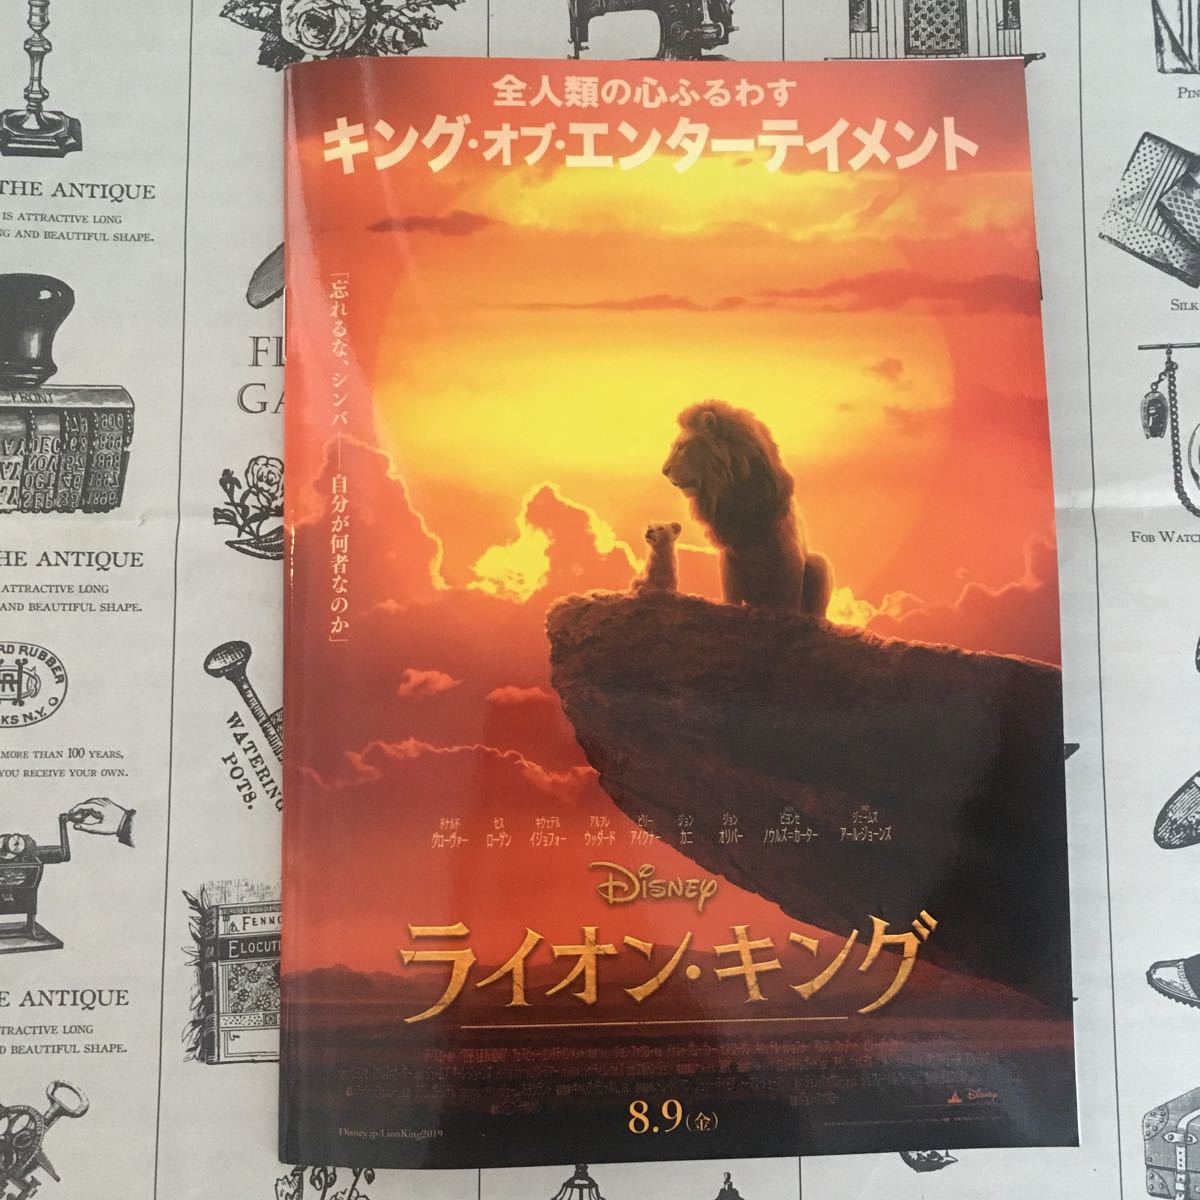  Lion King Note фильм лев кошка стоимость доставки 140 иен ~